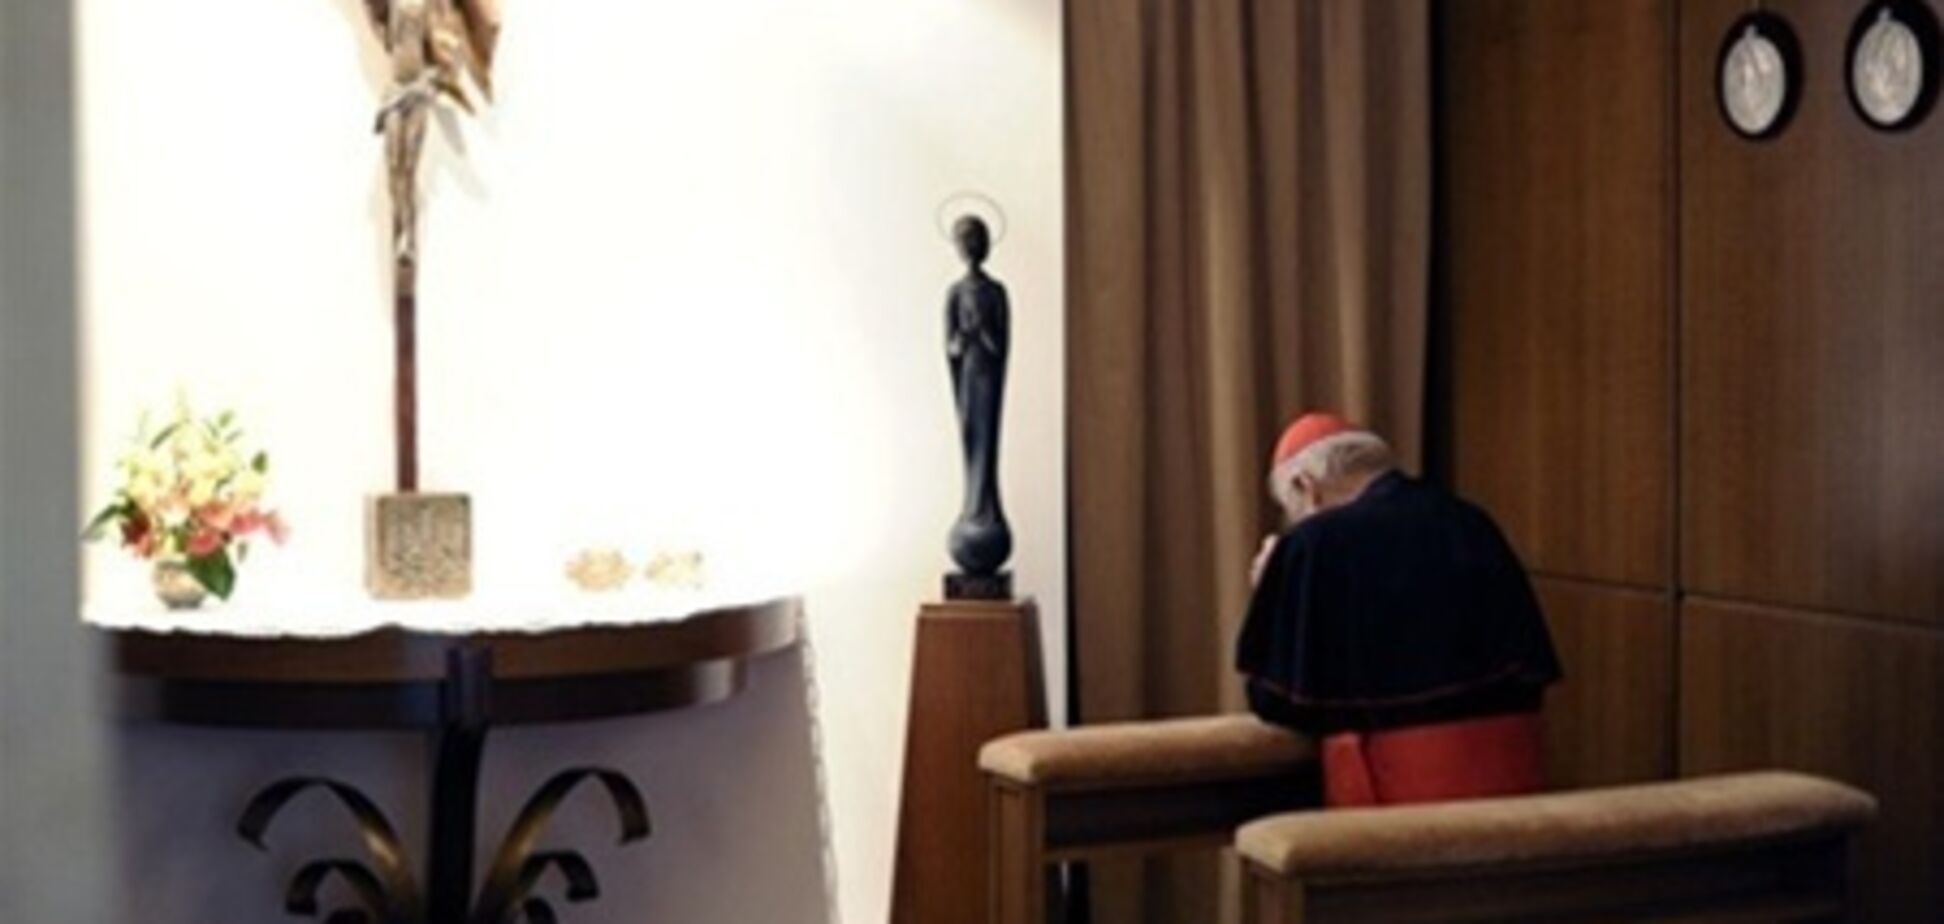 Кардинал Гузар примет участие в выборах Папы - Ватикан